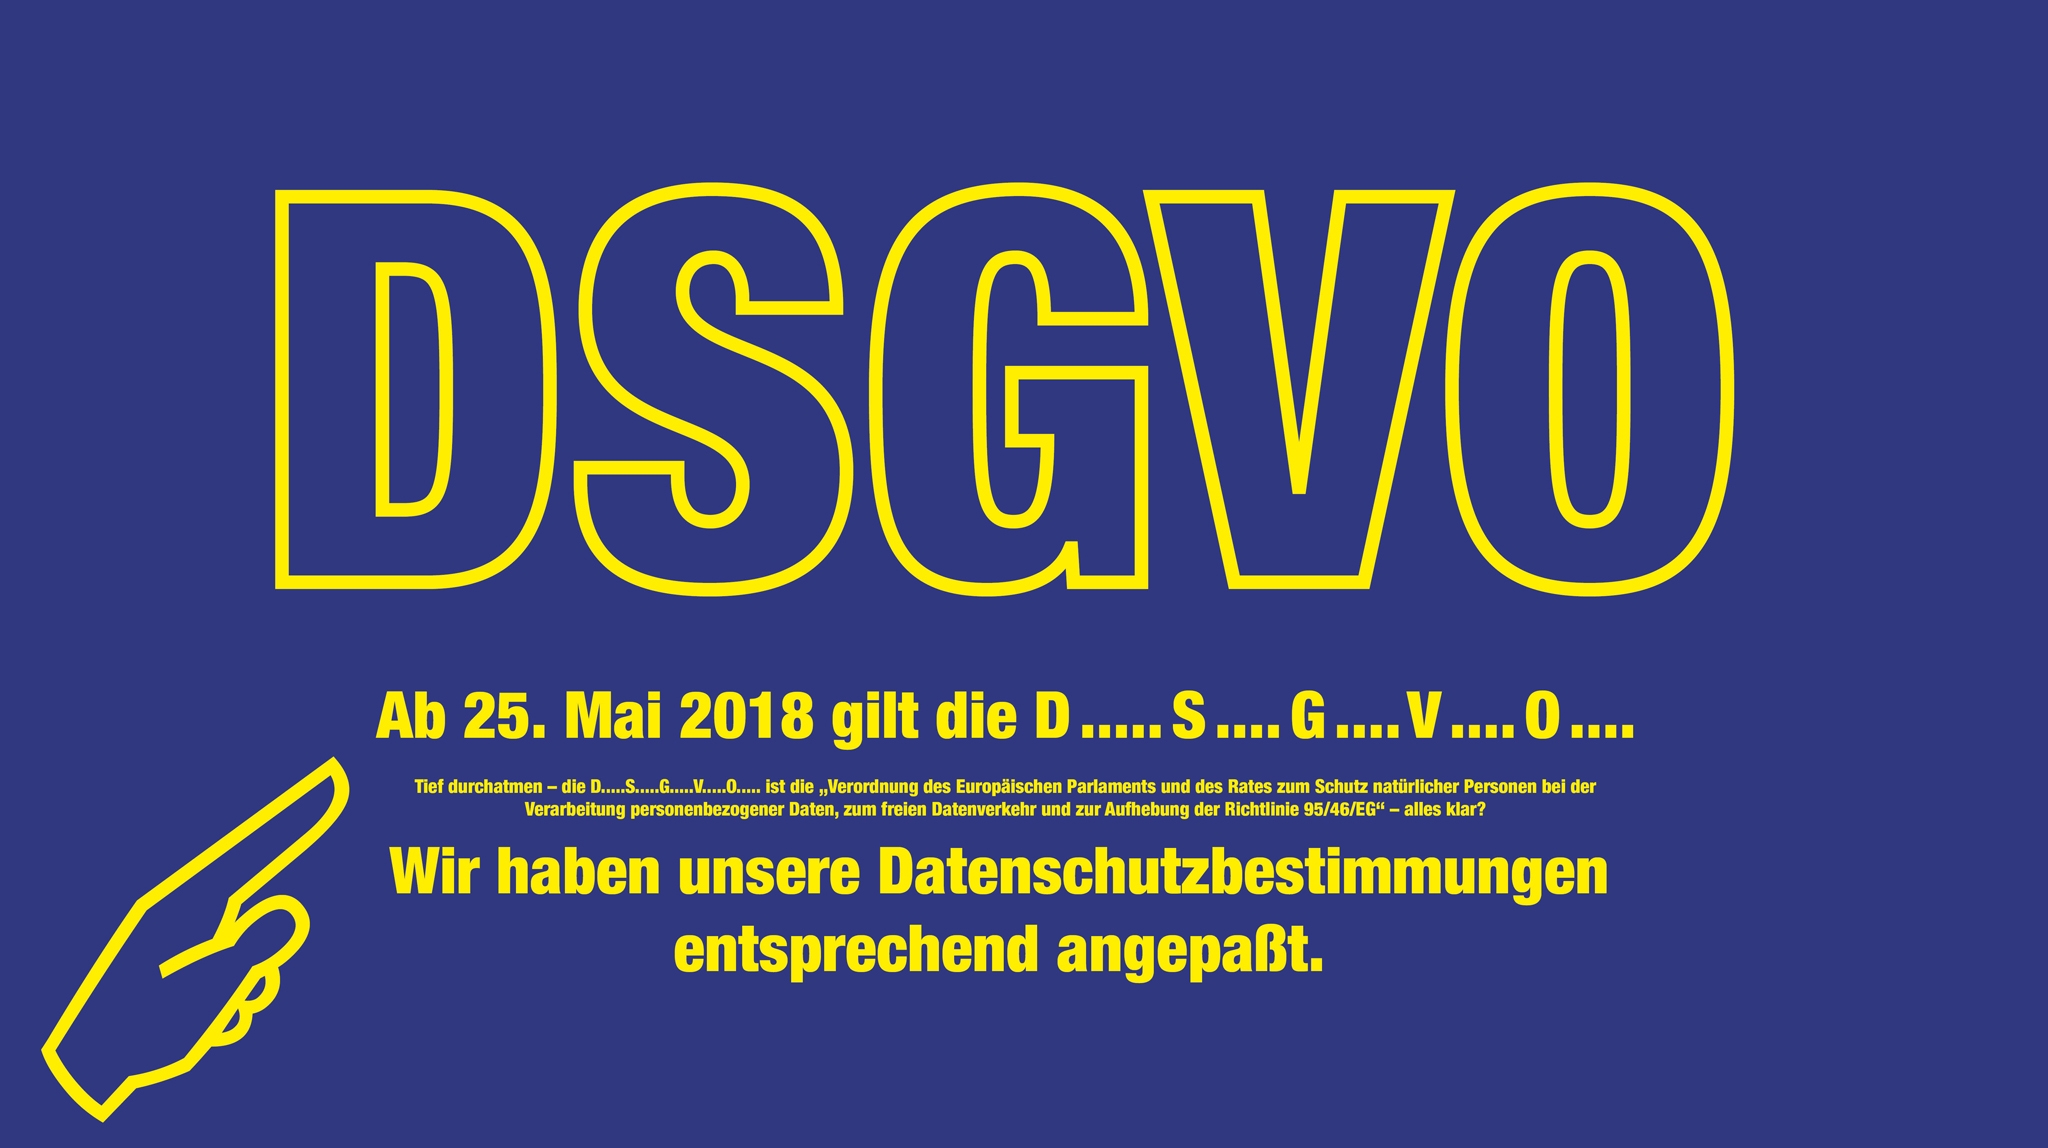 Die DSGVO tritt am 25. Mai 2018 in Kraft.